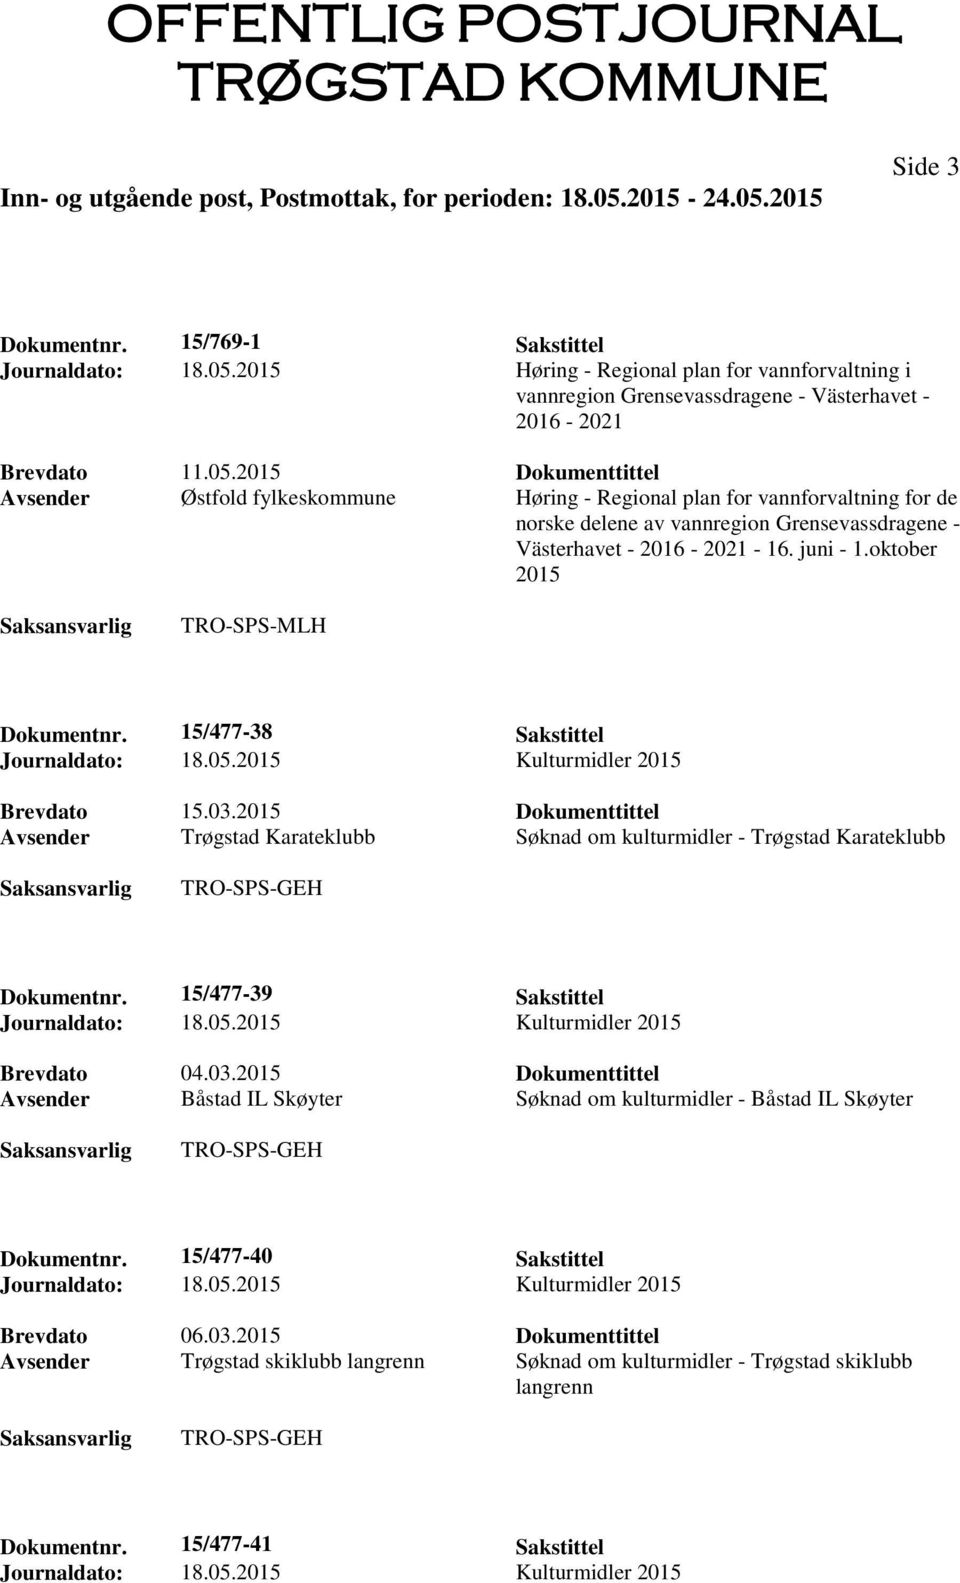 2015 Dokumenttittel Avsender Østfold fylkeskommune Høring - Regional plan for vannforvaltning for de norske delene av vannregion Grensevassdragene - Västerhavet - 2016-2021 - 16. juni - 1.